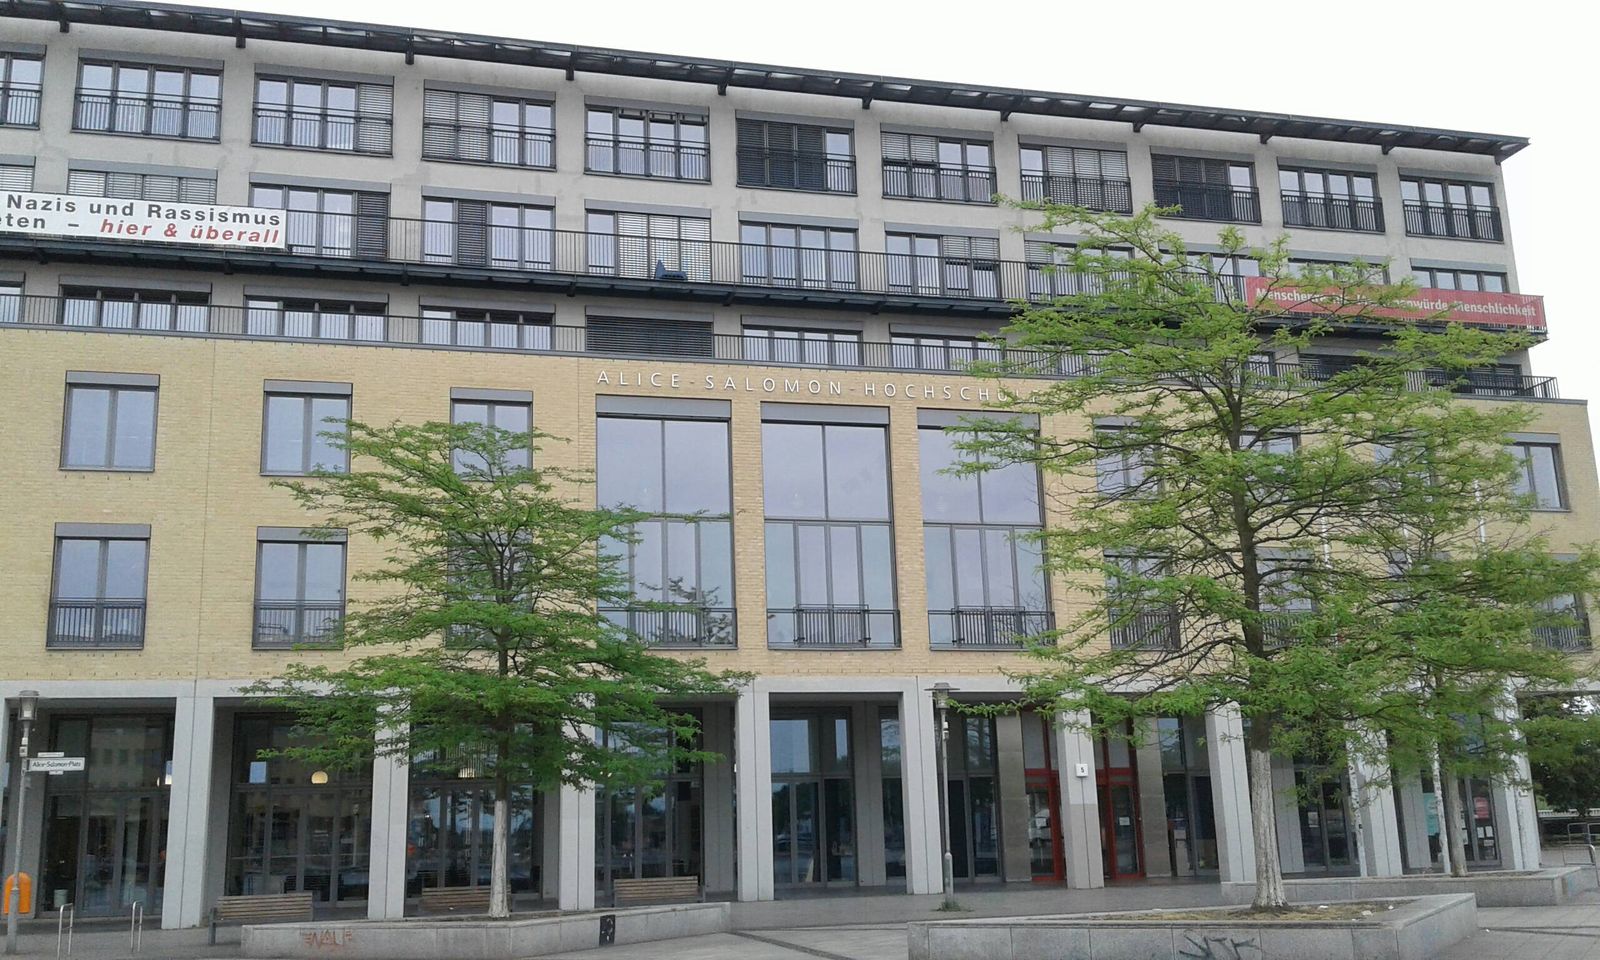 Alice-Salomon-Fachhochschule in Berlin ⇒ in Das Örtliche